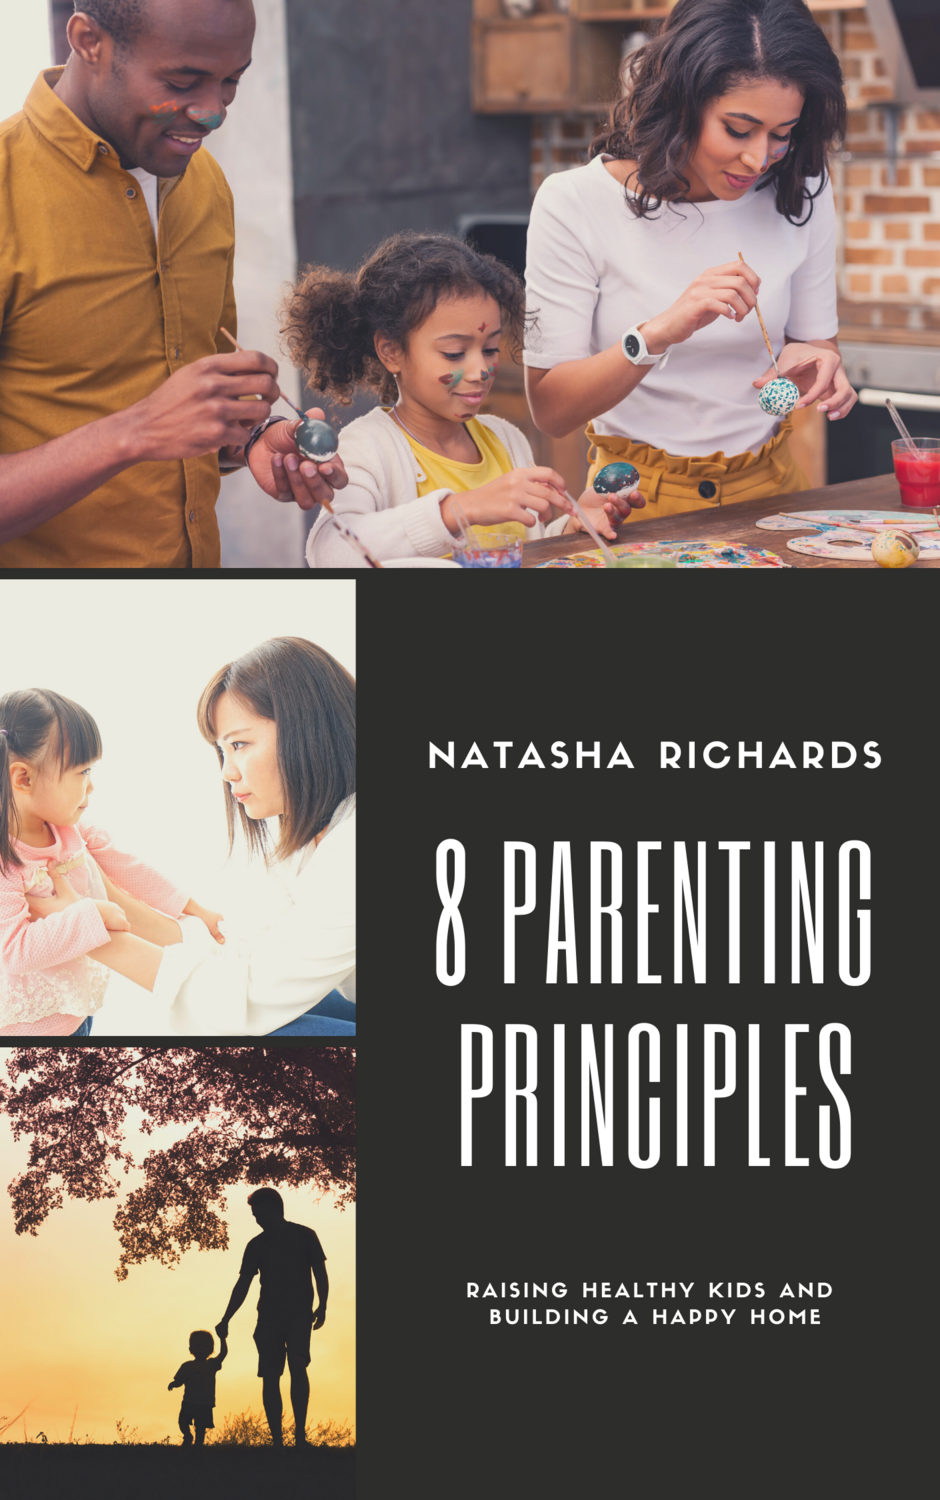 8 Parenting Principles